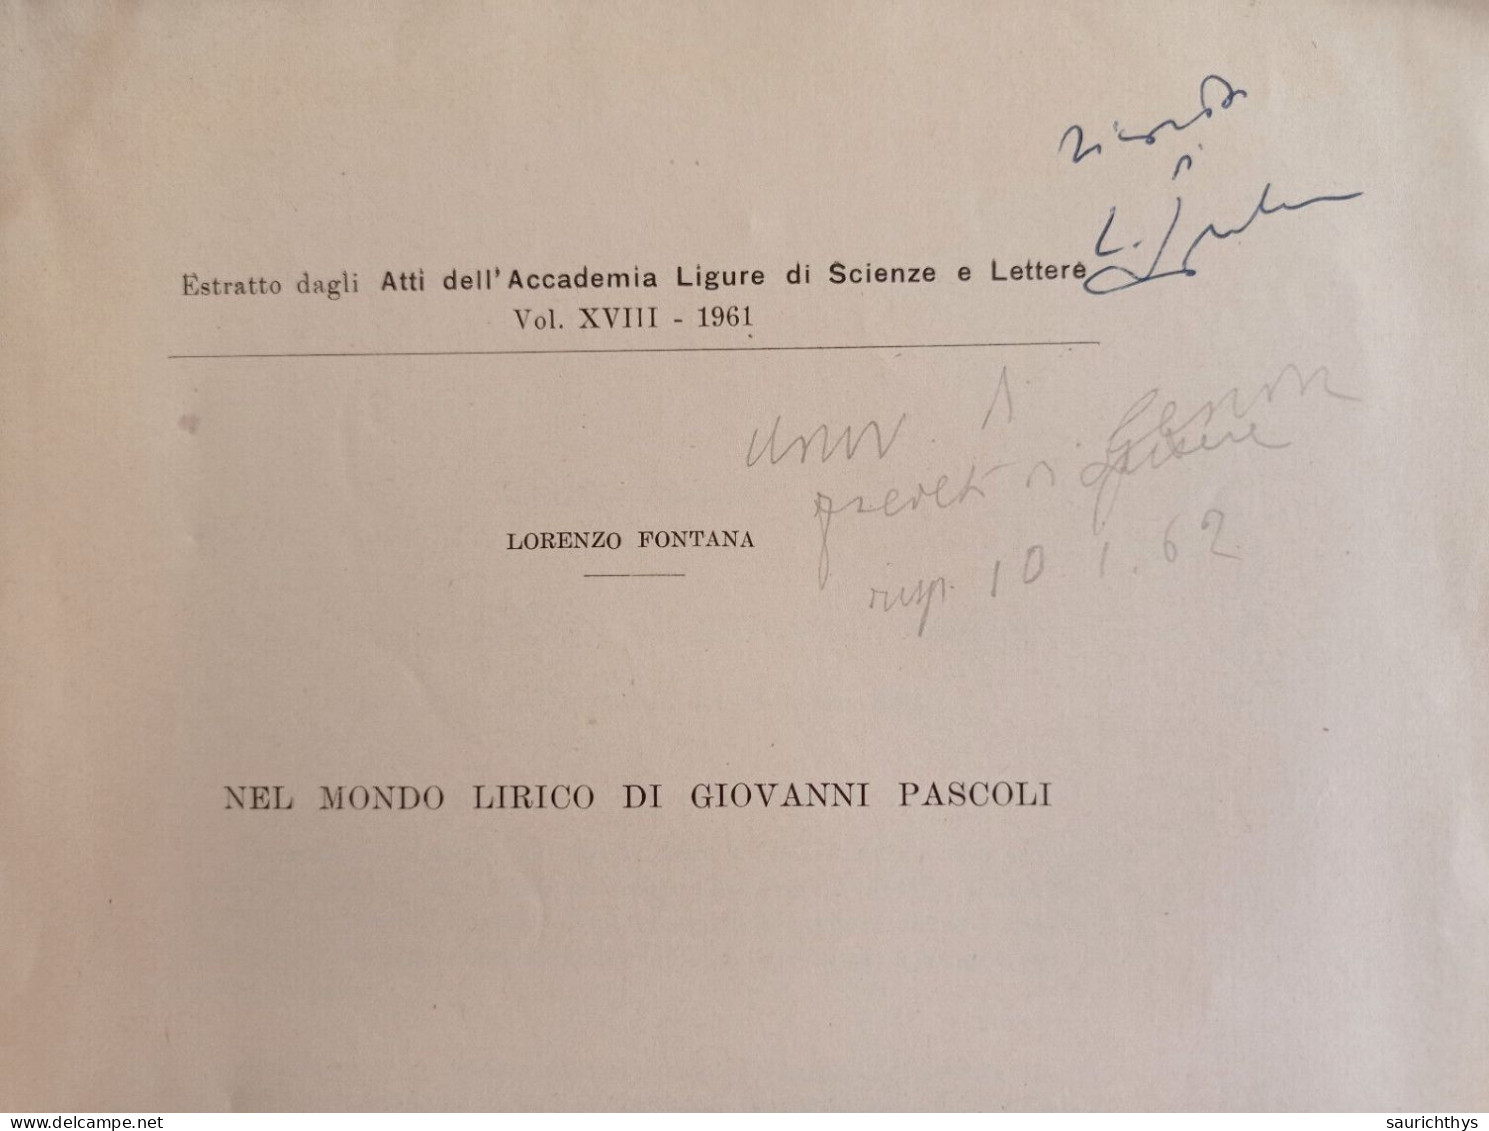 Atti Dell'Accademia Ligure Di Scienze Lettere Nel Mondo Lirico Di Giovanni Pascoli Autografo Lorenzo Fontana Genova 1961 - History, Biography, Philosophy